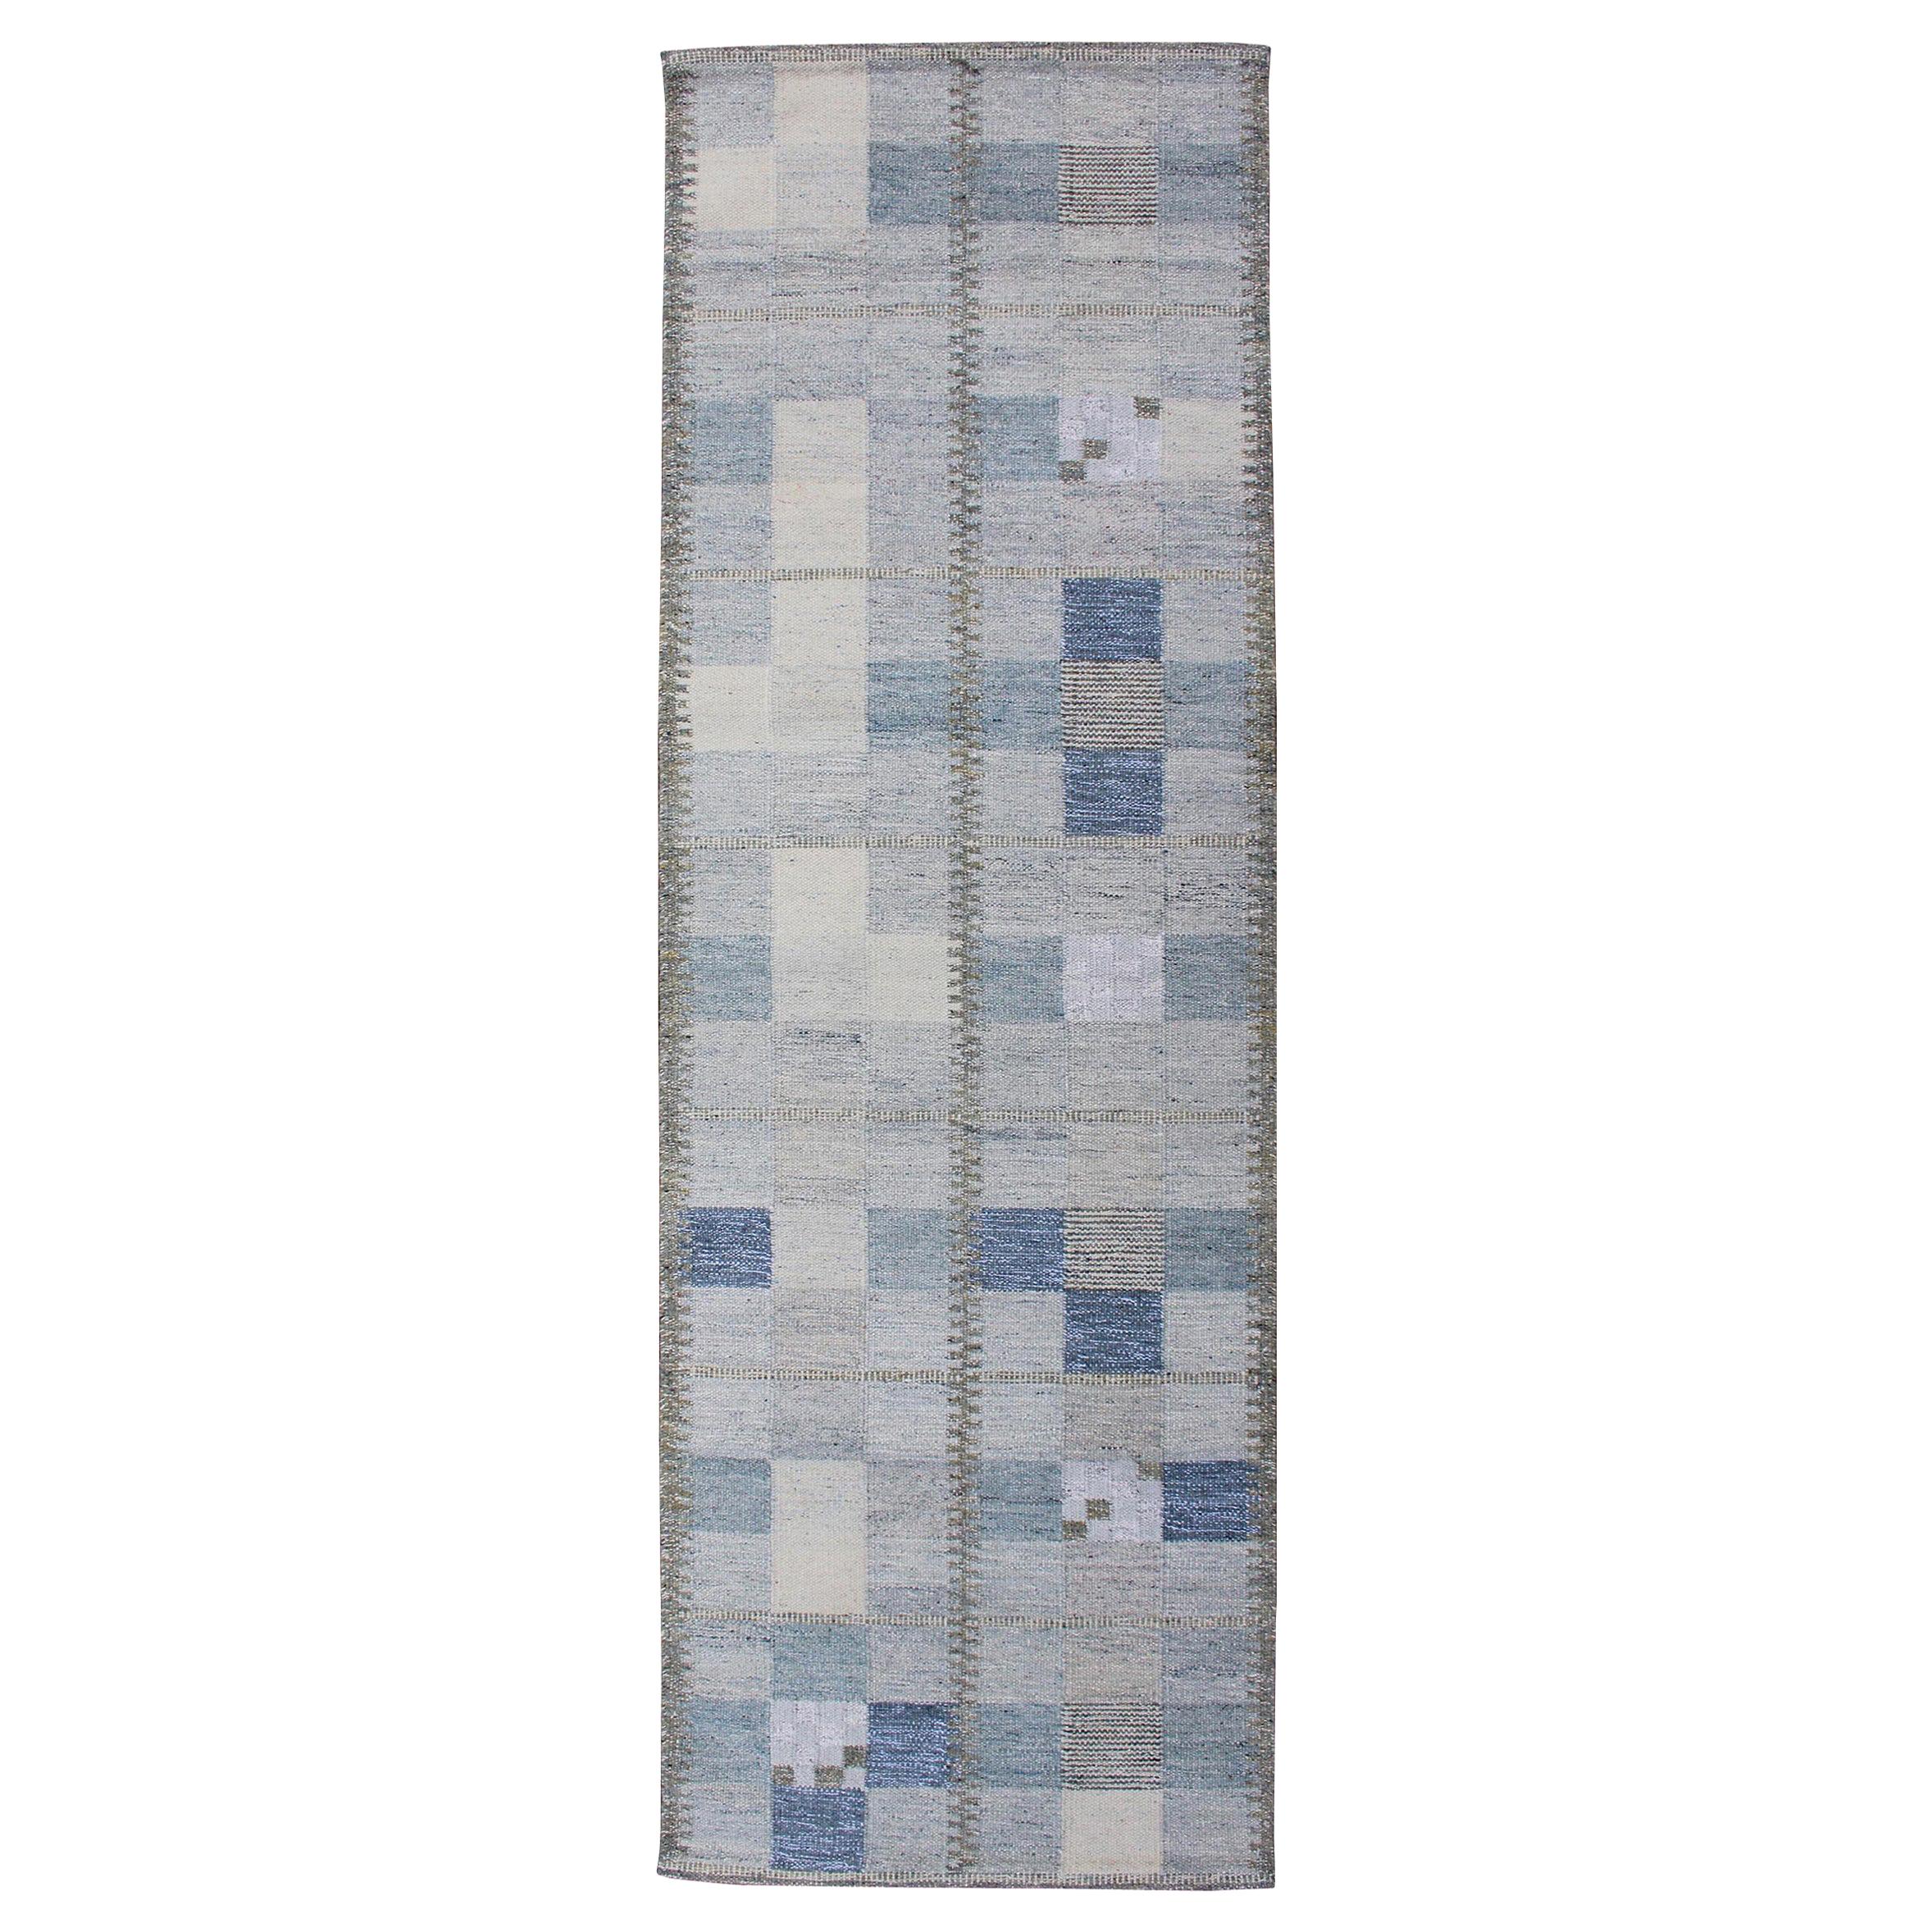 Skandinavischer Flachgewebe-Teppich im skandinavischen Stil mit Schachbrettdesign in Grau, Blau